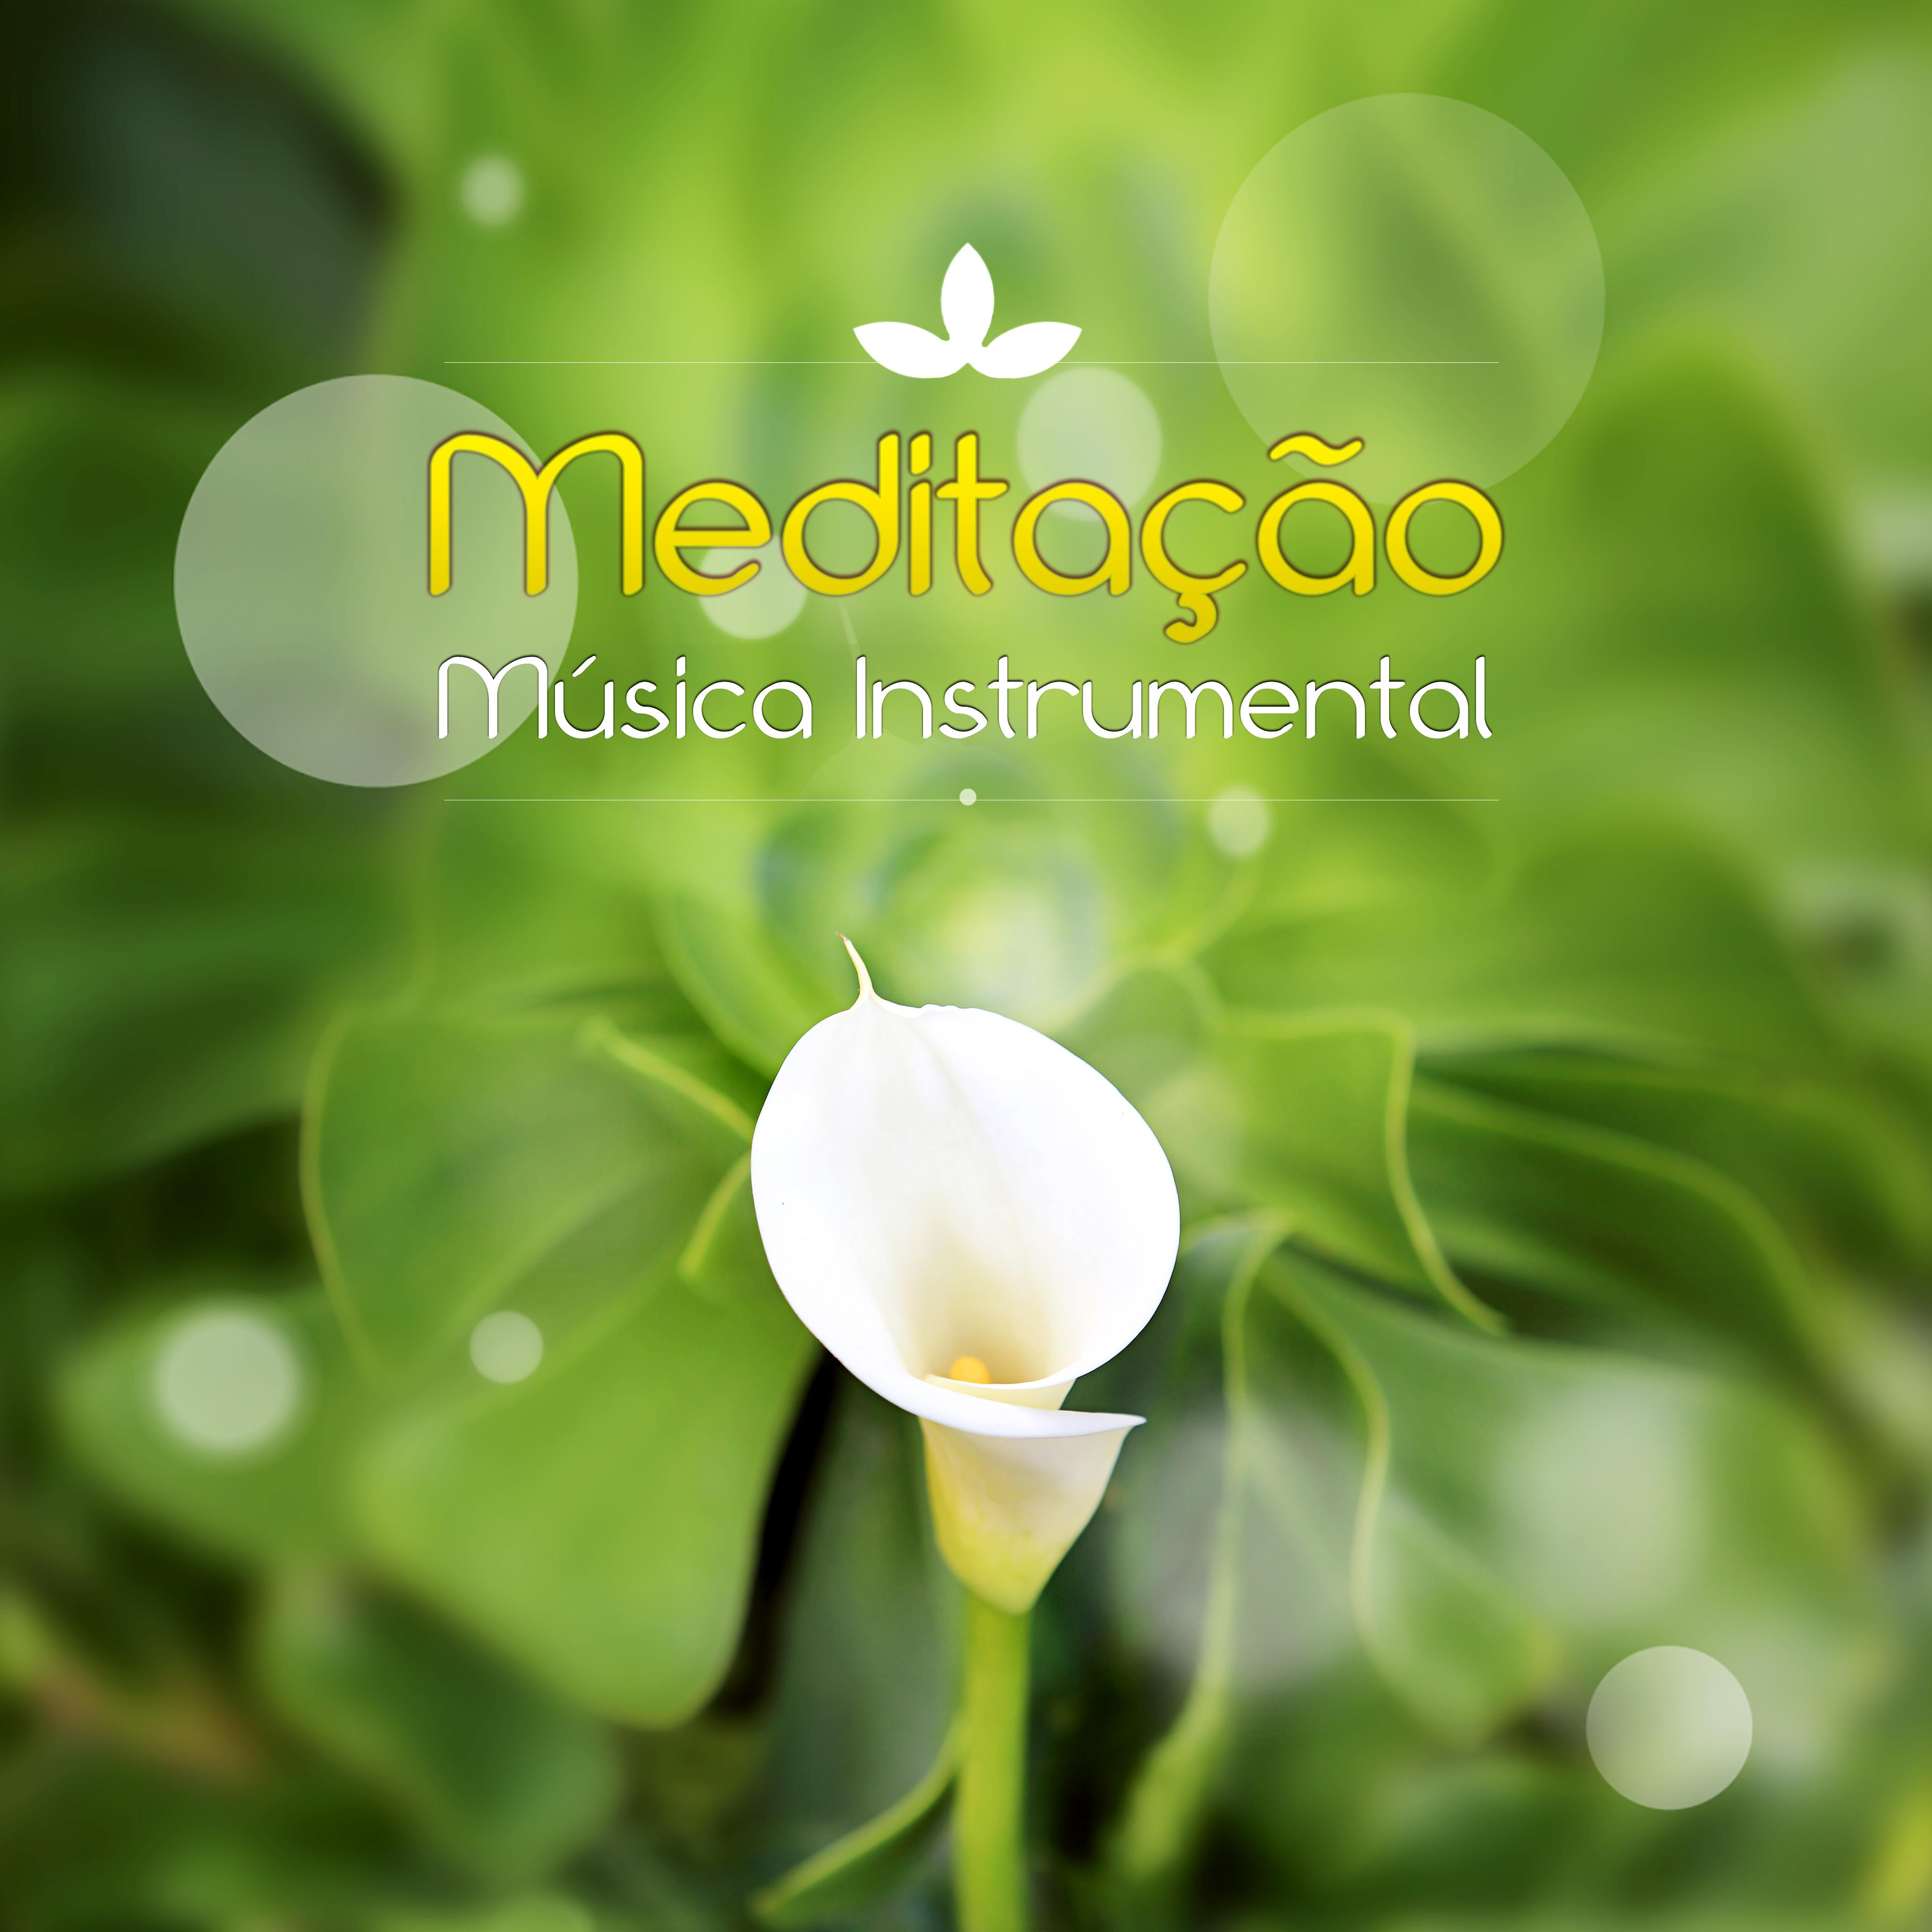 Meditação - Música Instrumental – Harmonia, Música de Flauta, Piano, Guitarra, Sons da Natureza, Musica Reiki, Zen, Yoga, Espiritualidade